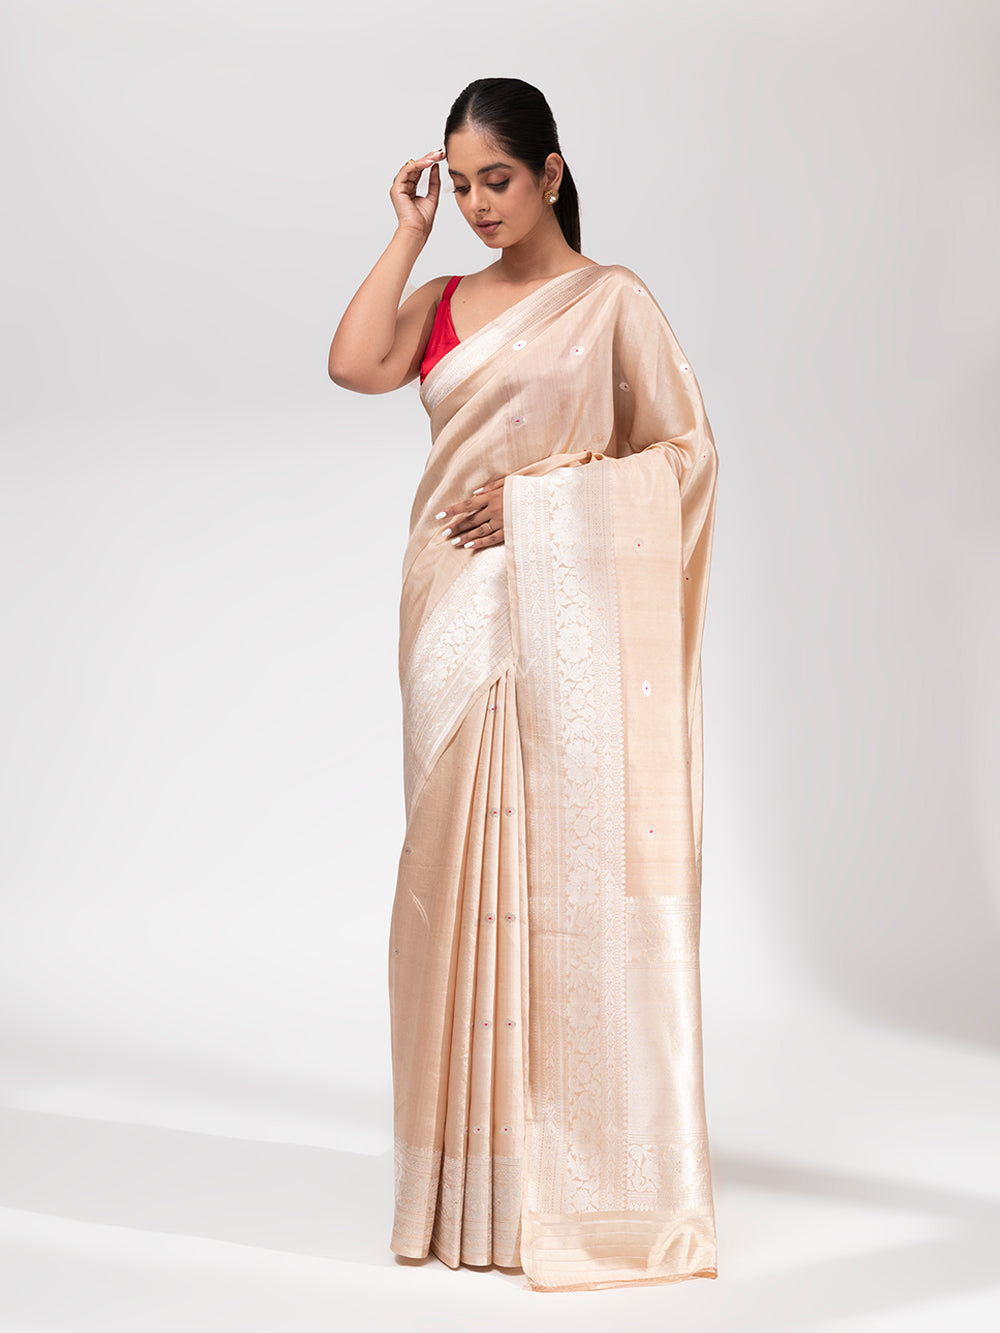 200 Pastel sarees ideas  saree designs indian dresses stylish sarees